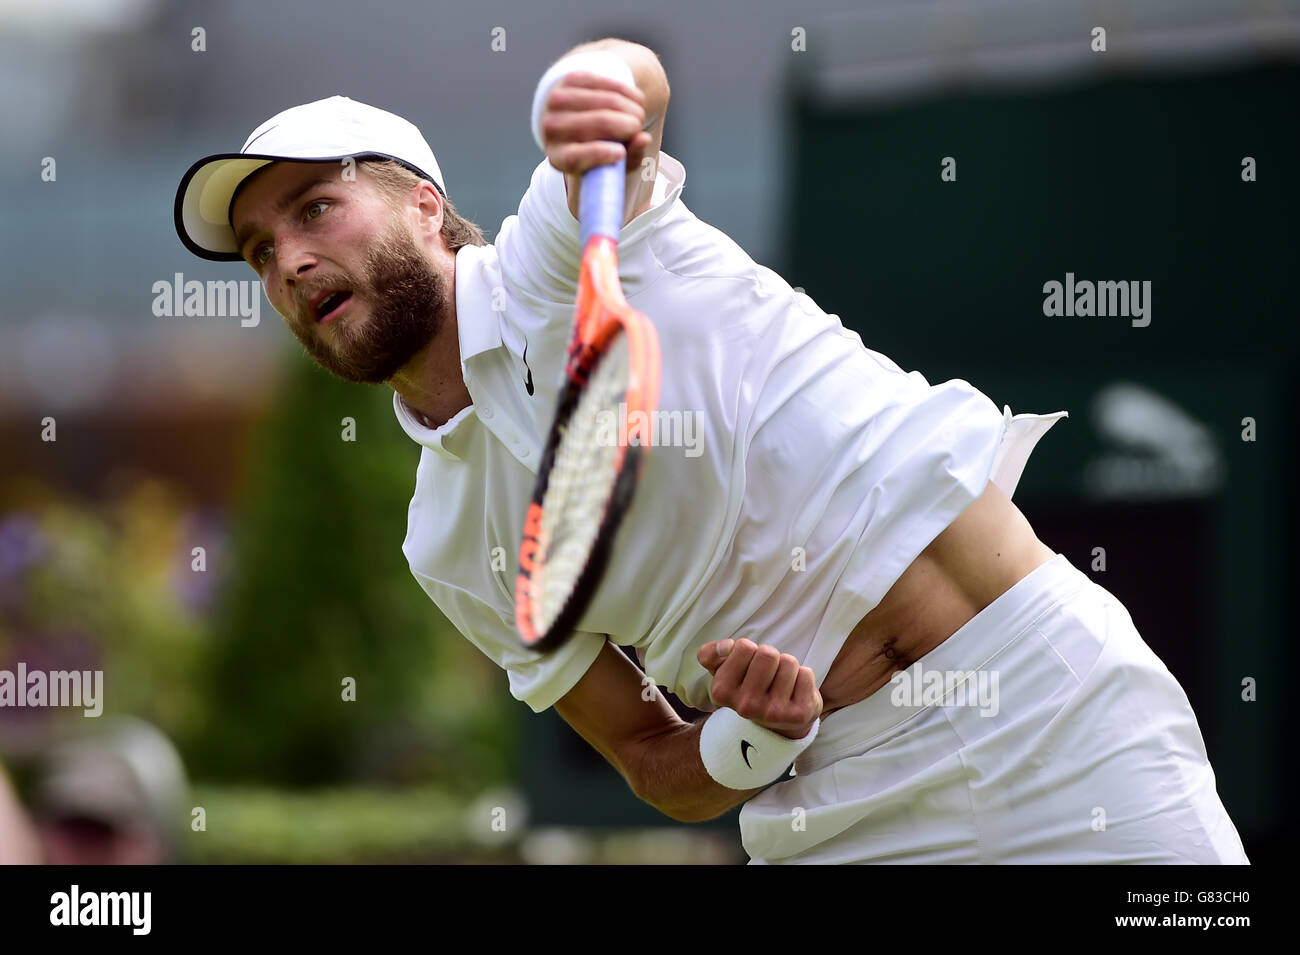 Liam Broady en action contre Marinko Matotero lors du premier jour des championnats de Wimbledon au All England Lawn tennis and Croquet Club, Wimbledon. Banque D'Images